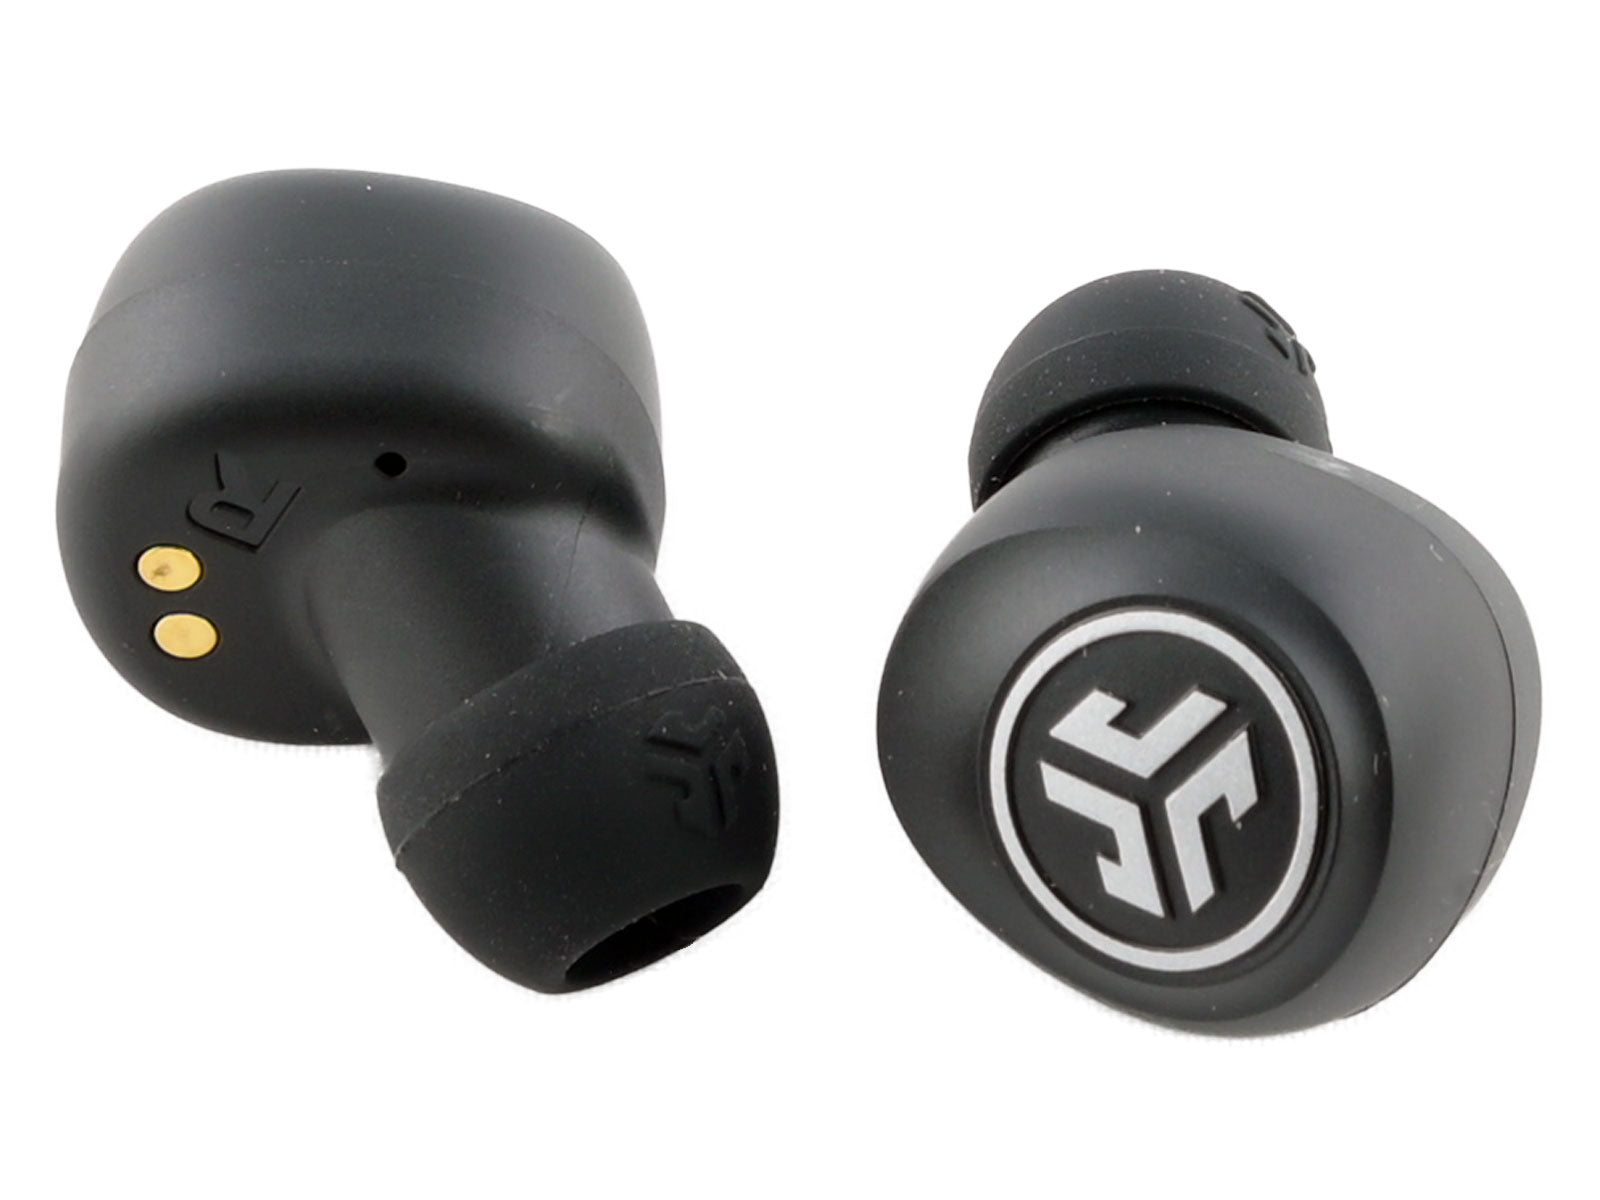  JLab Go Air True Wireless Earbuds In-Ear Kopfhörer Auf weißem Hintergrund sind zwei kabellose schwarze Ohrhörer mit einem Logo in Form von „JL“ in Kreisen abgebildet. An einem Ohrhörer sind goldene Ladekontakte sichtbar.